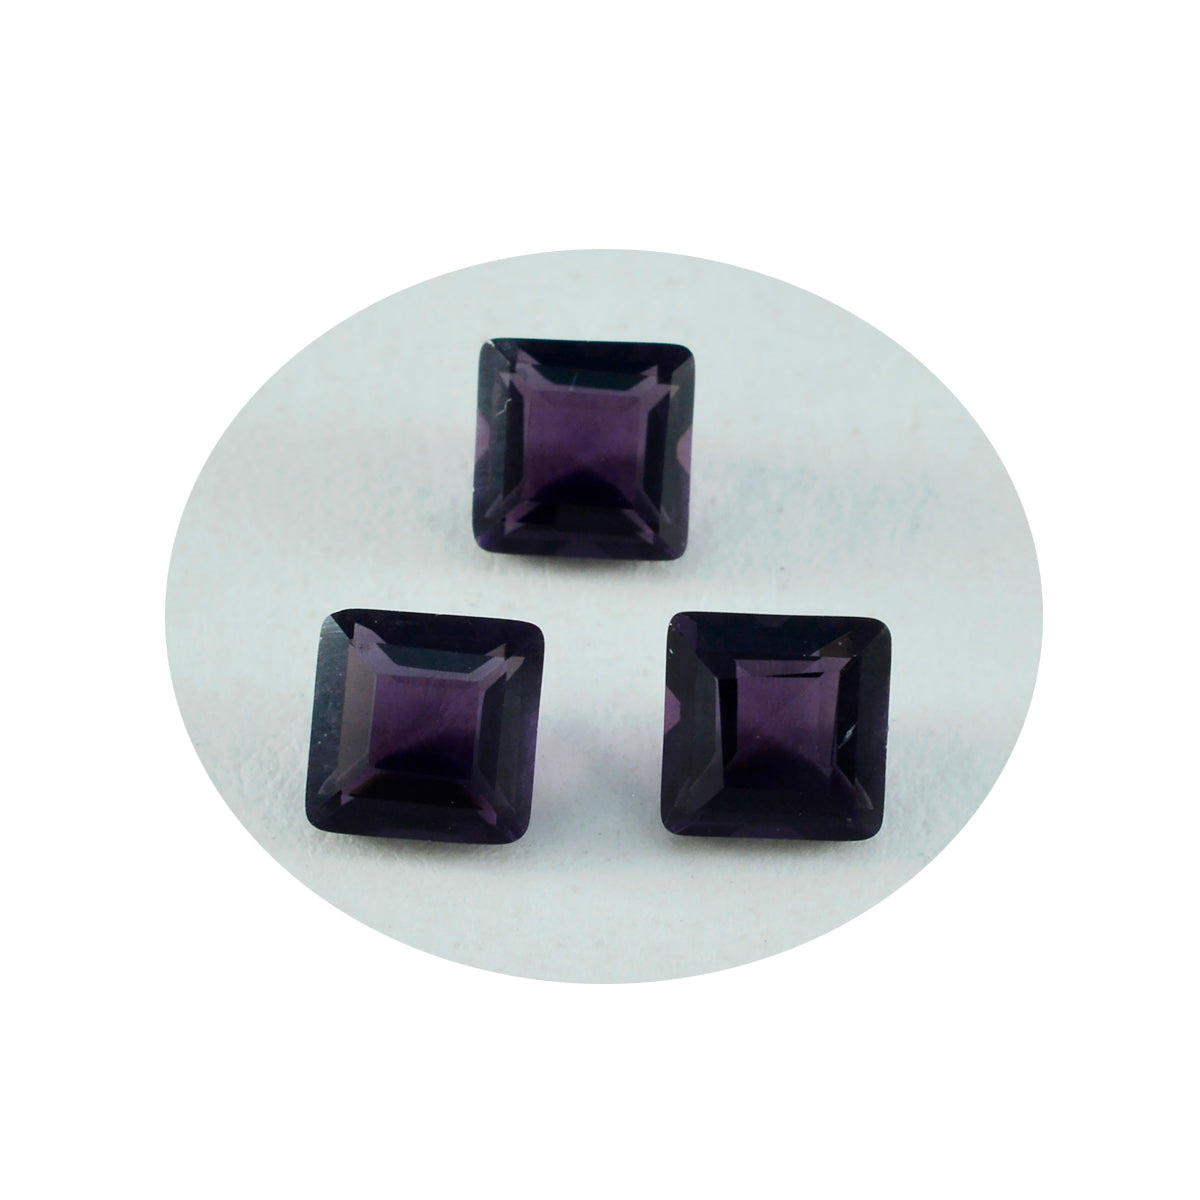 Riyogems 1pc améthyste violette cz facettes 10x10mm forme carrée qualité incroyable pierres précieuses en vrac